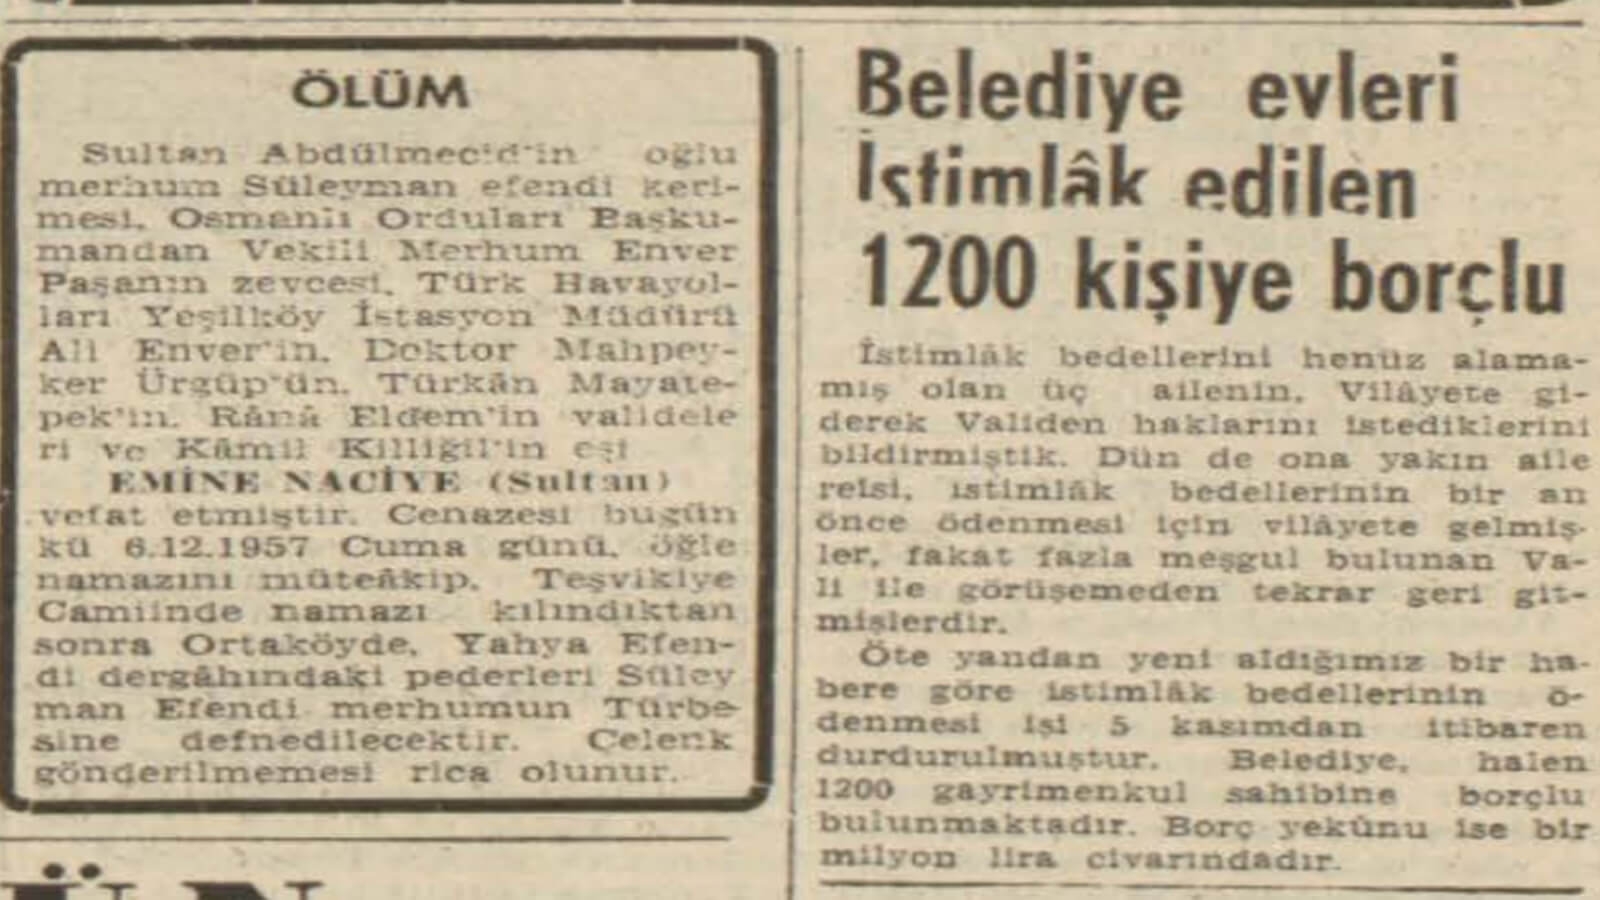 1957 Yılında Belediye 1.200 Gayrimenkul Sahibine 1 Milyon TL Borçlu!